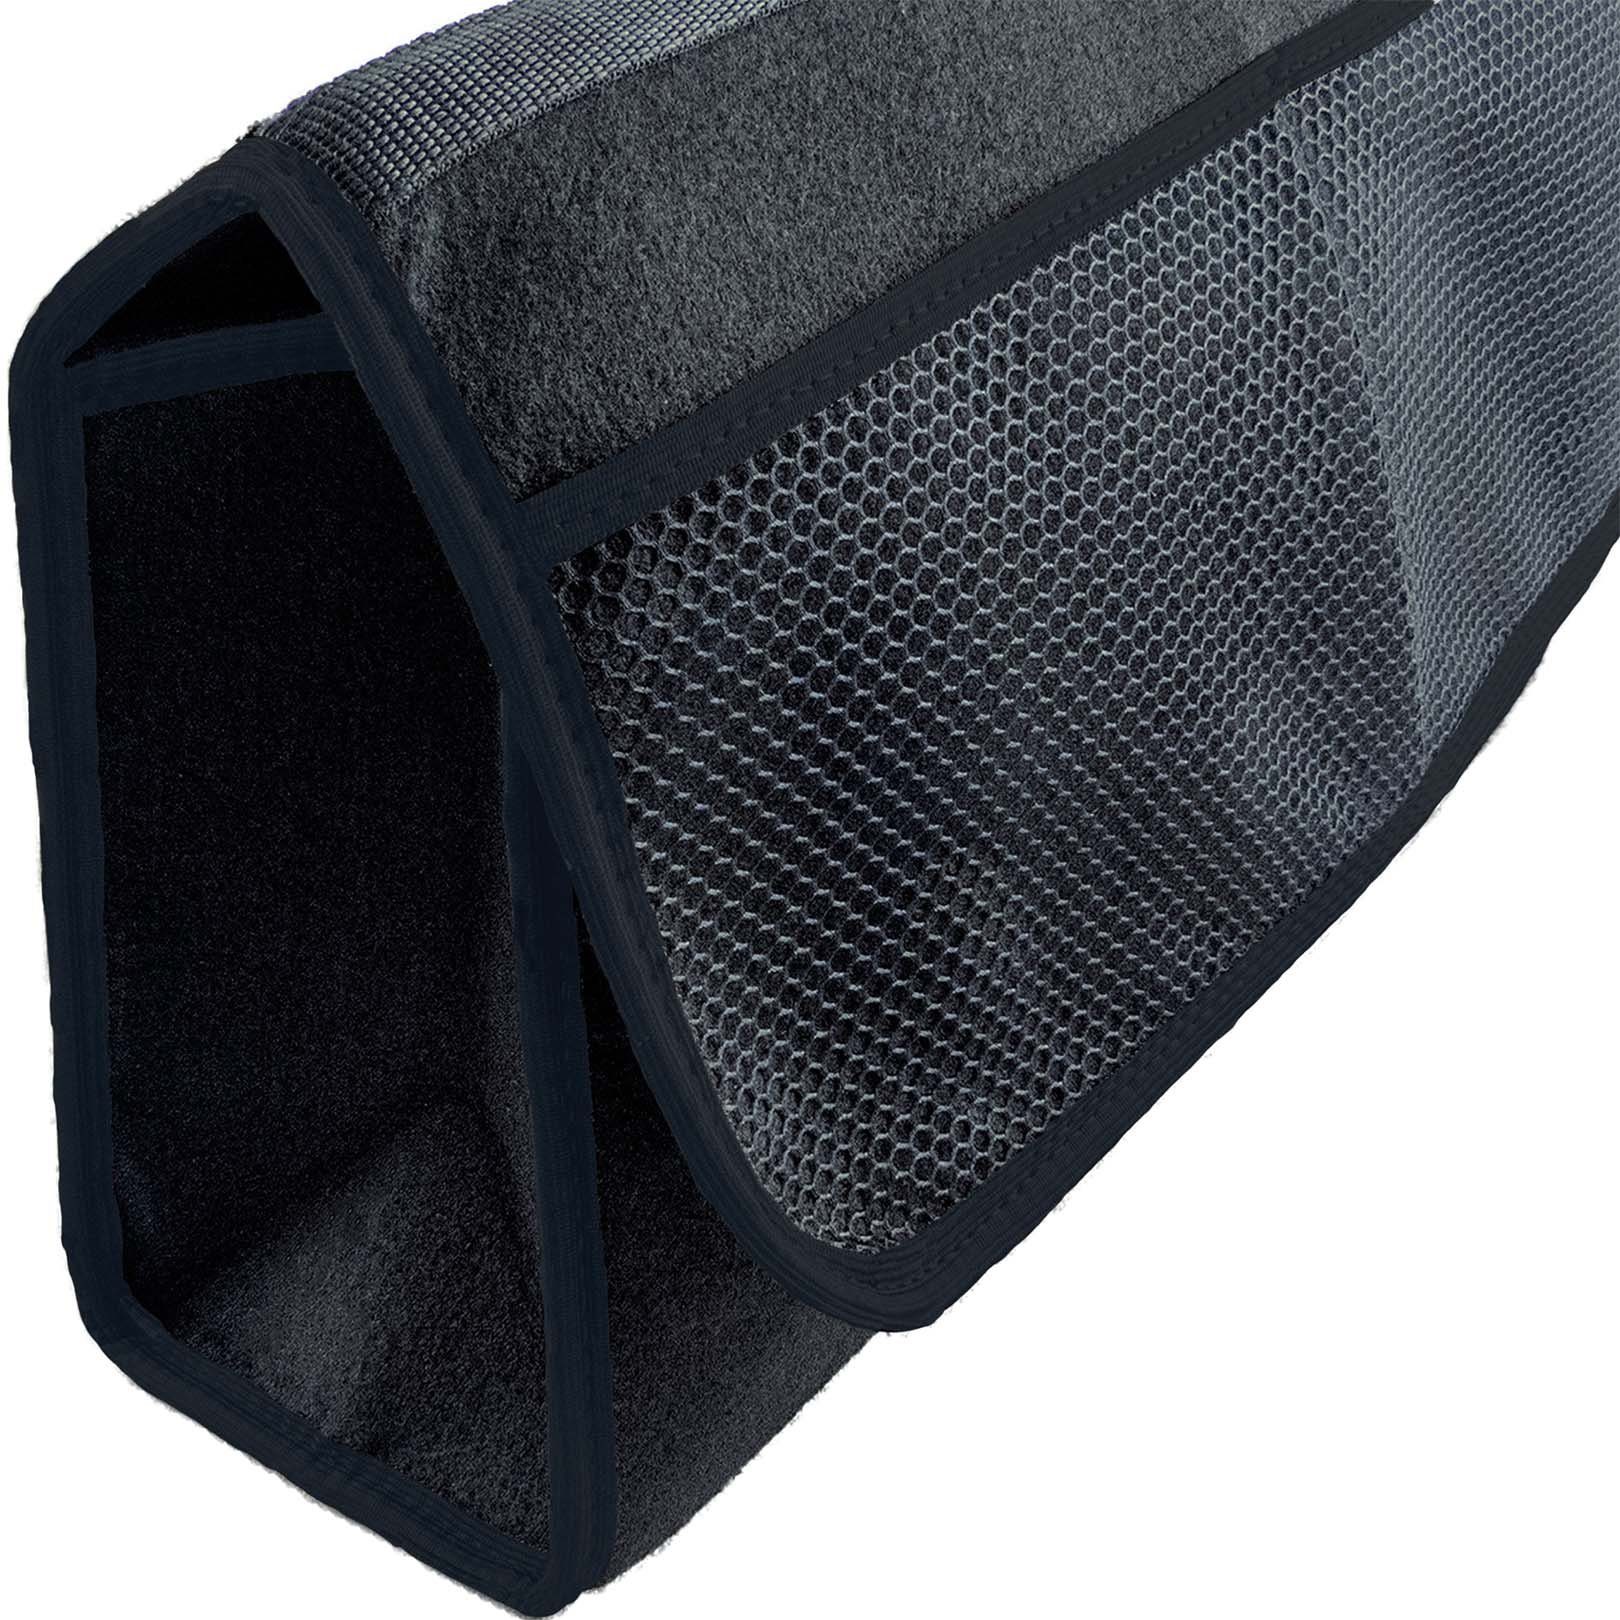 L & P in Auto Kofferraumtasche Saum Car farbigem schwarz Organizer Design mit